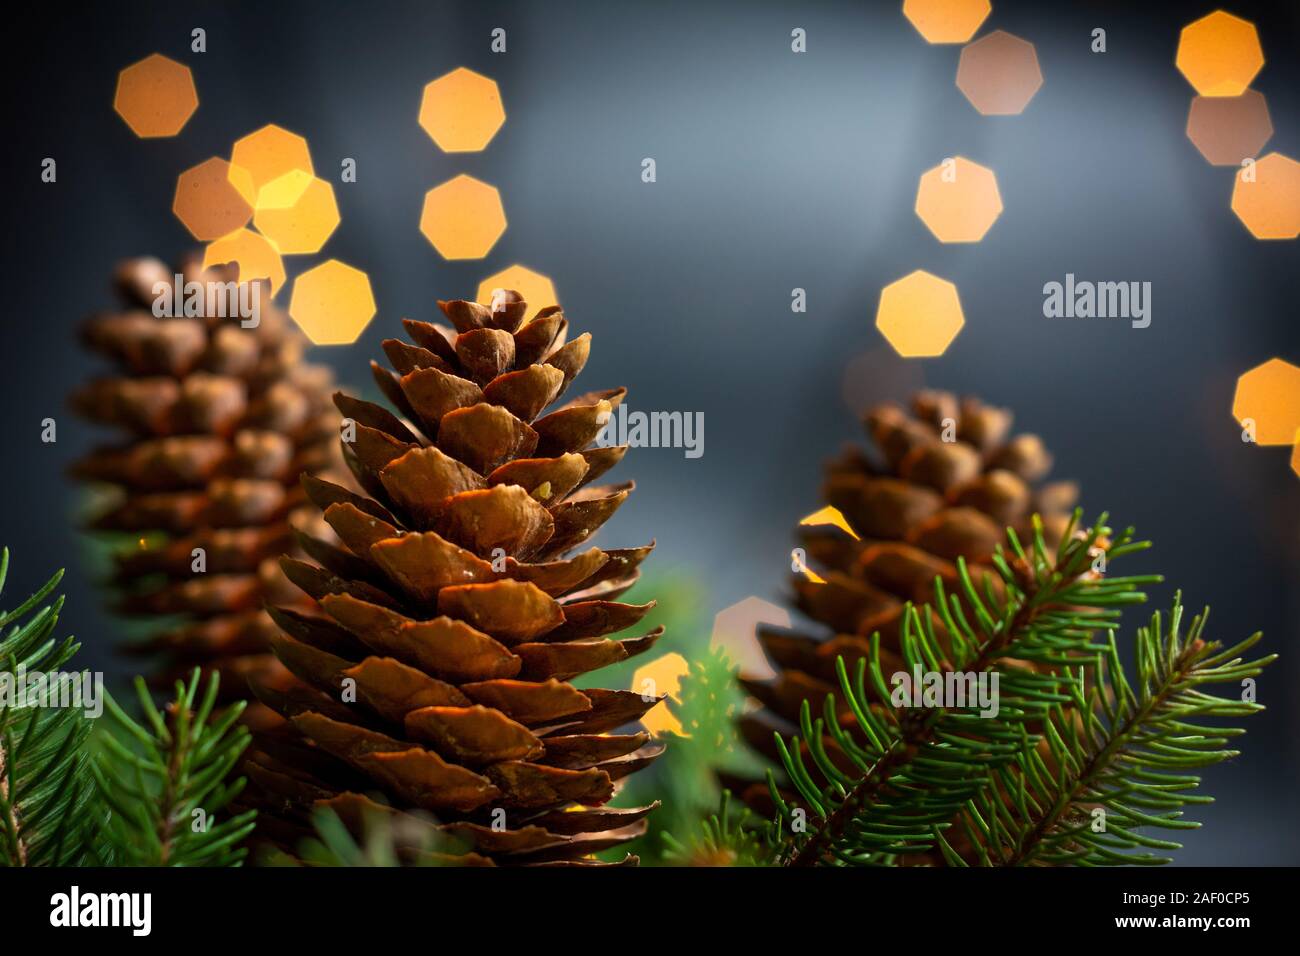 Kiefernzapfen und Tanne in festliche Weihnachten beleuchtete Umgebung Stockfoto